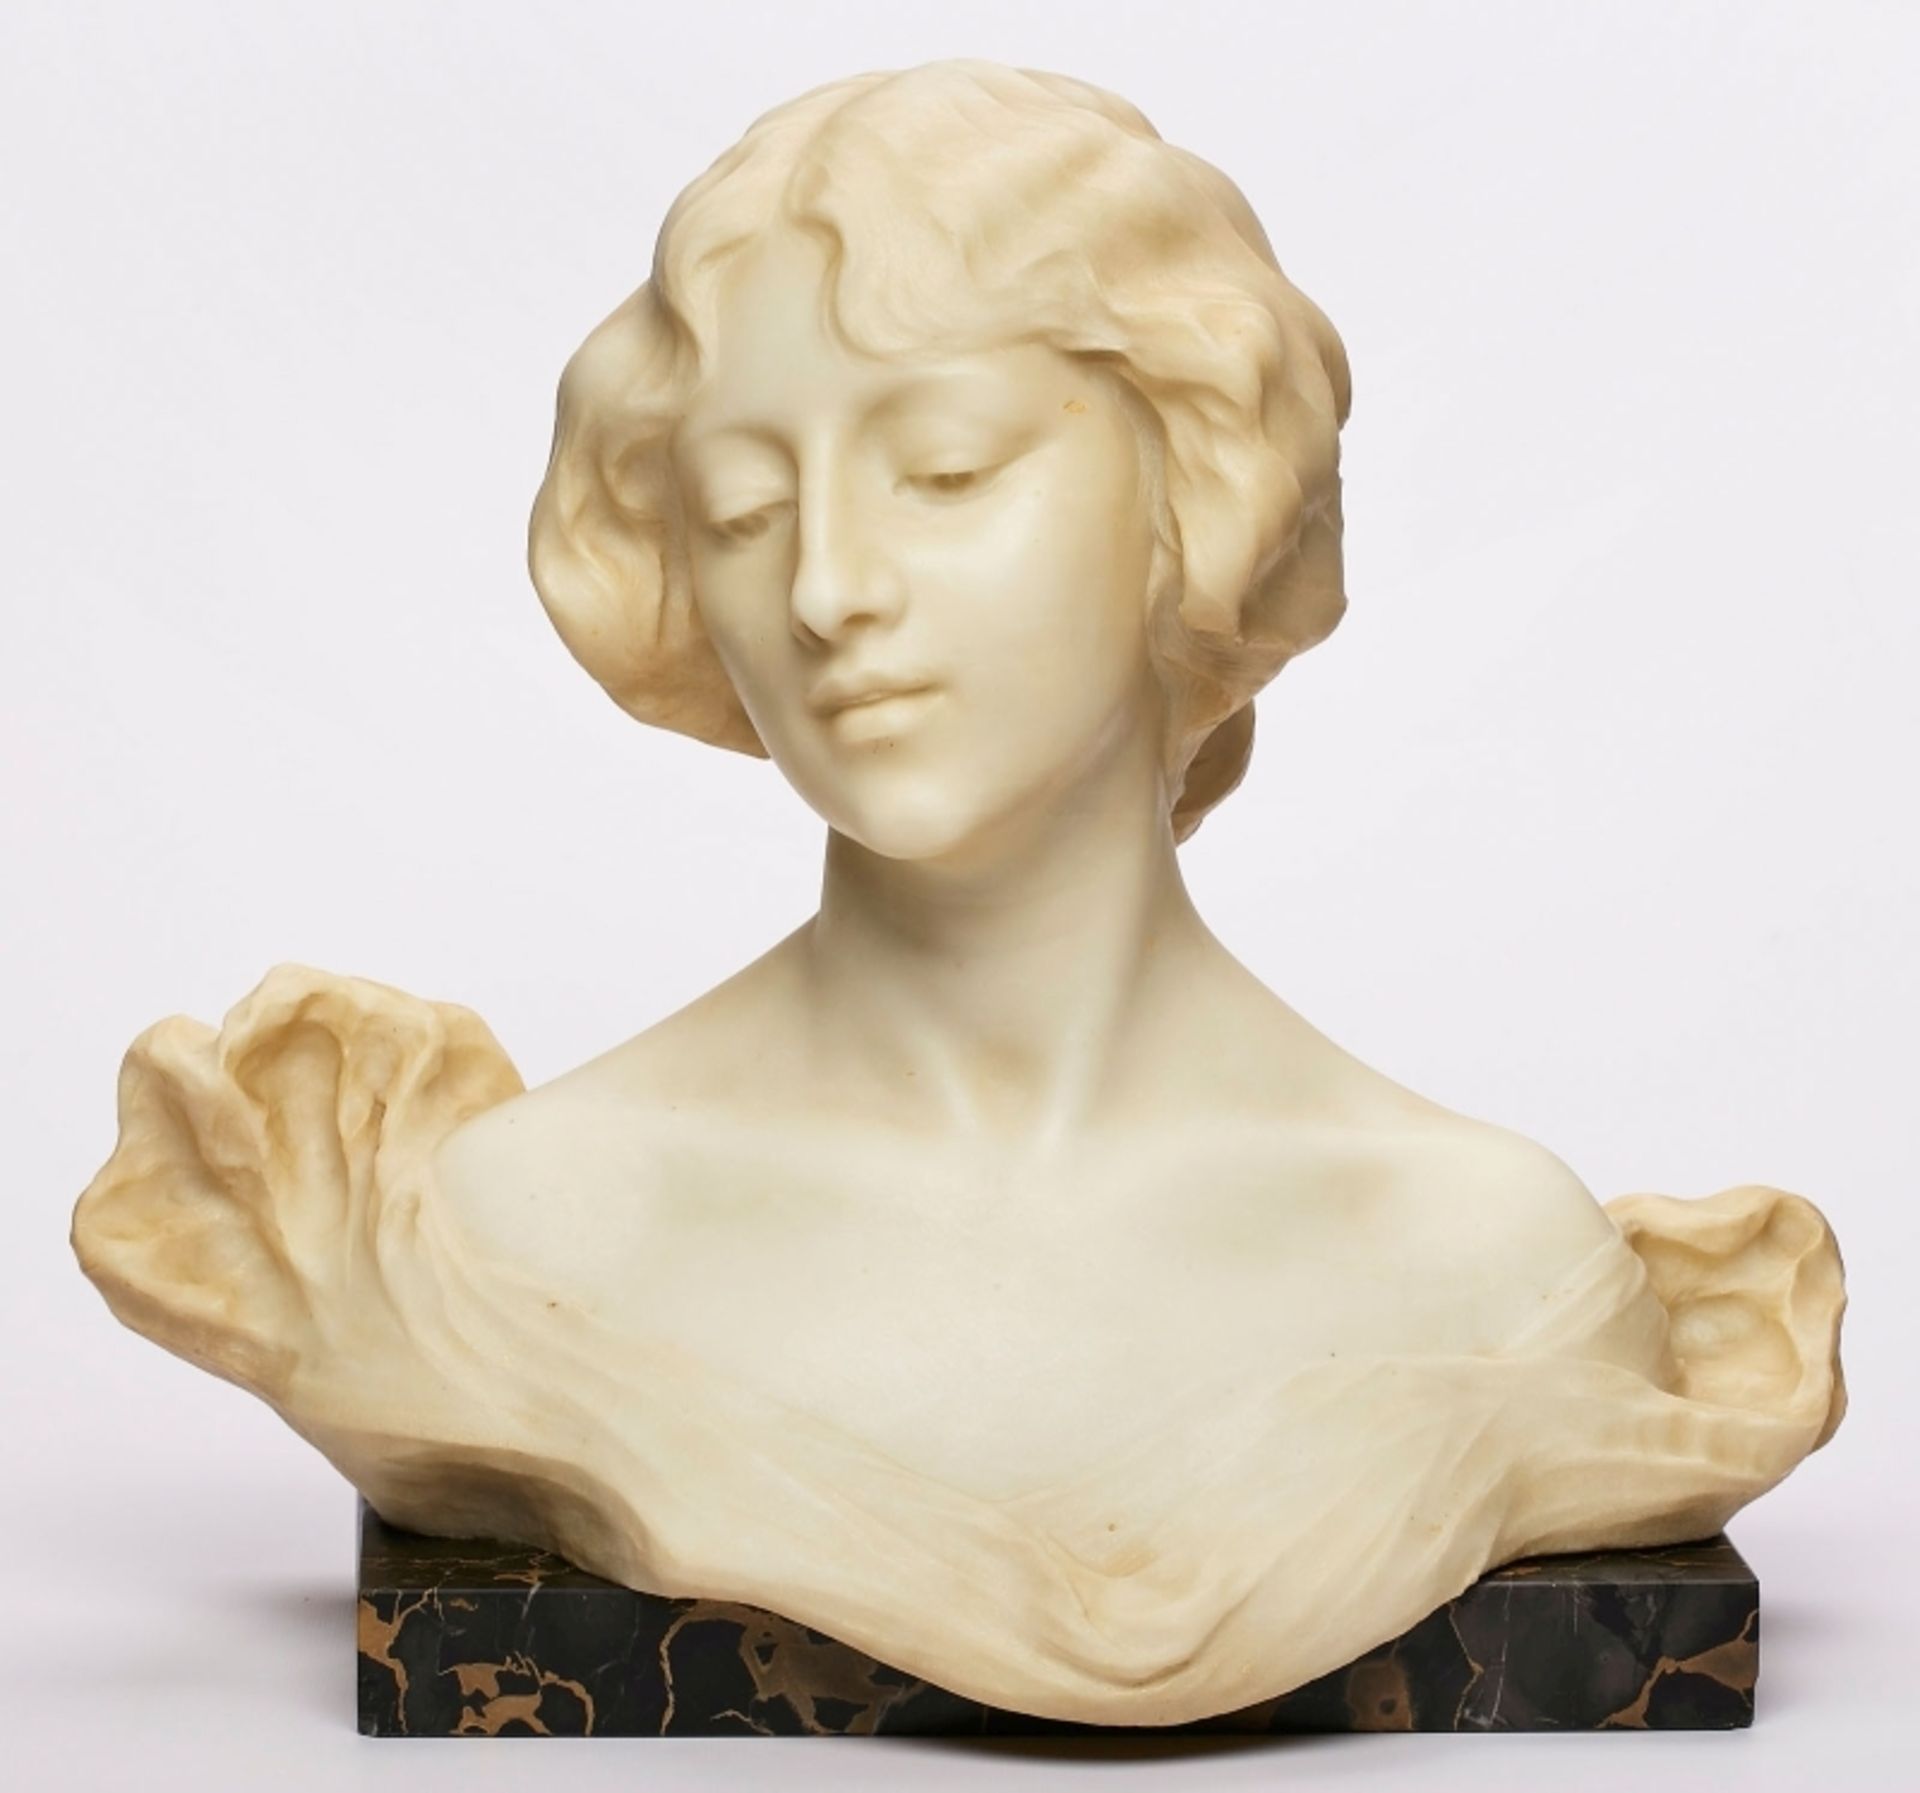 Gr. Büste "Junge Frau mit hochgestecktem Haar", Jugendstil, wohl Italien um 1900.